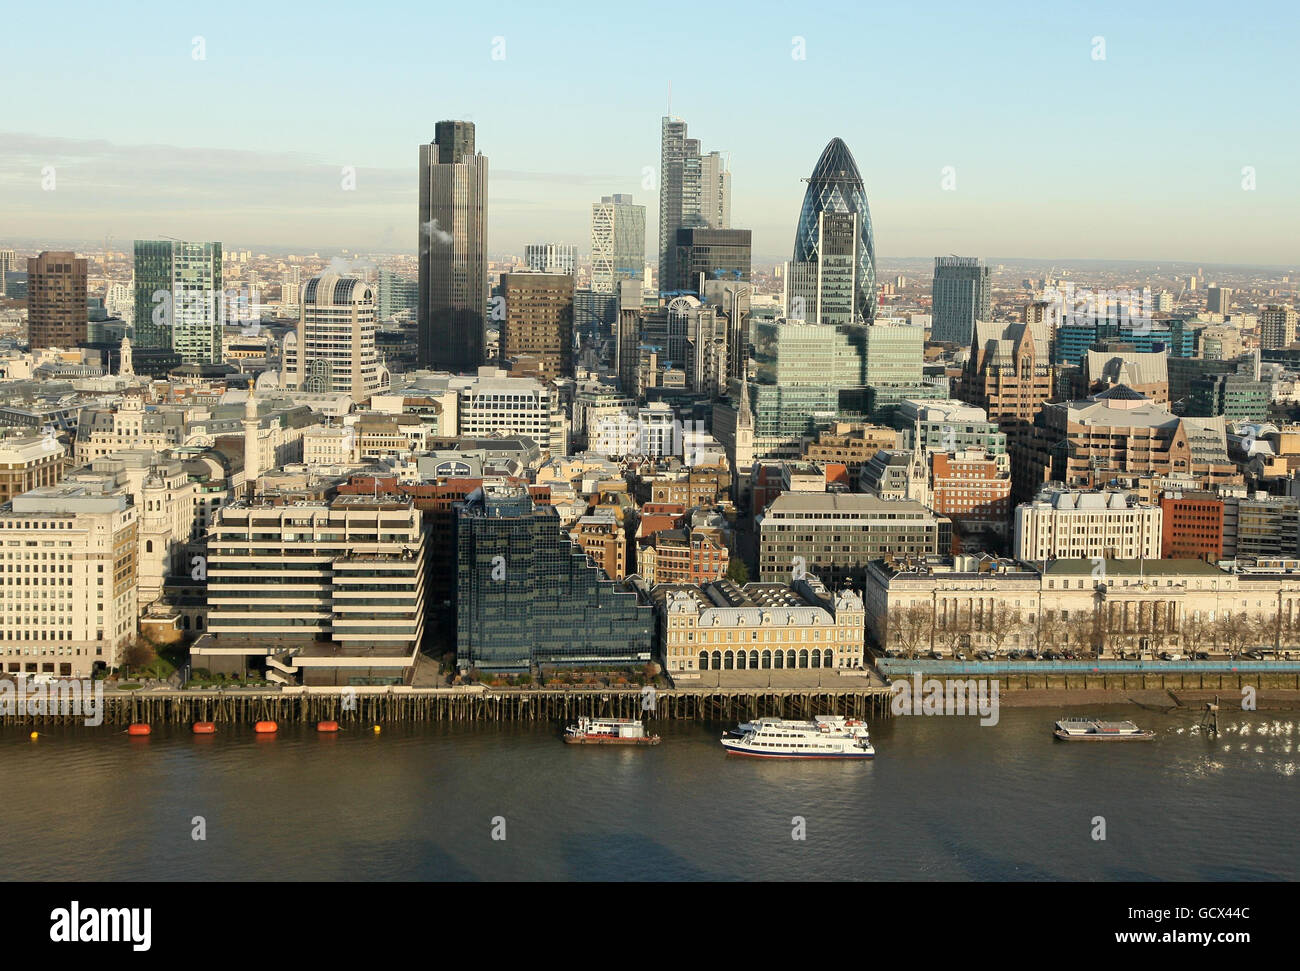 Ein allgemeiner Blick auf die City of London aus dem 24. Stock des Shard, in London Bridge, die jetzt das höchste Gebäude in der Hauptstadt ist. Stockfoto